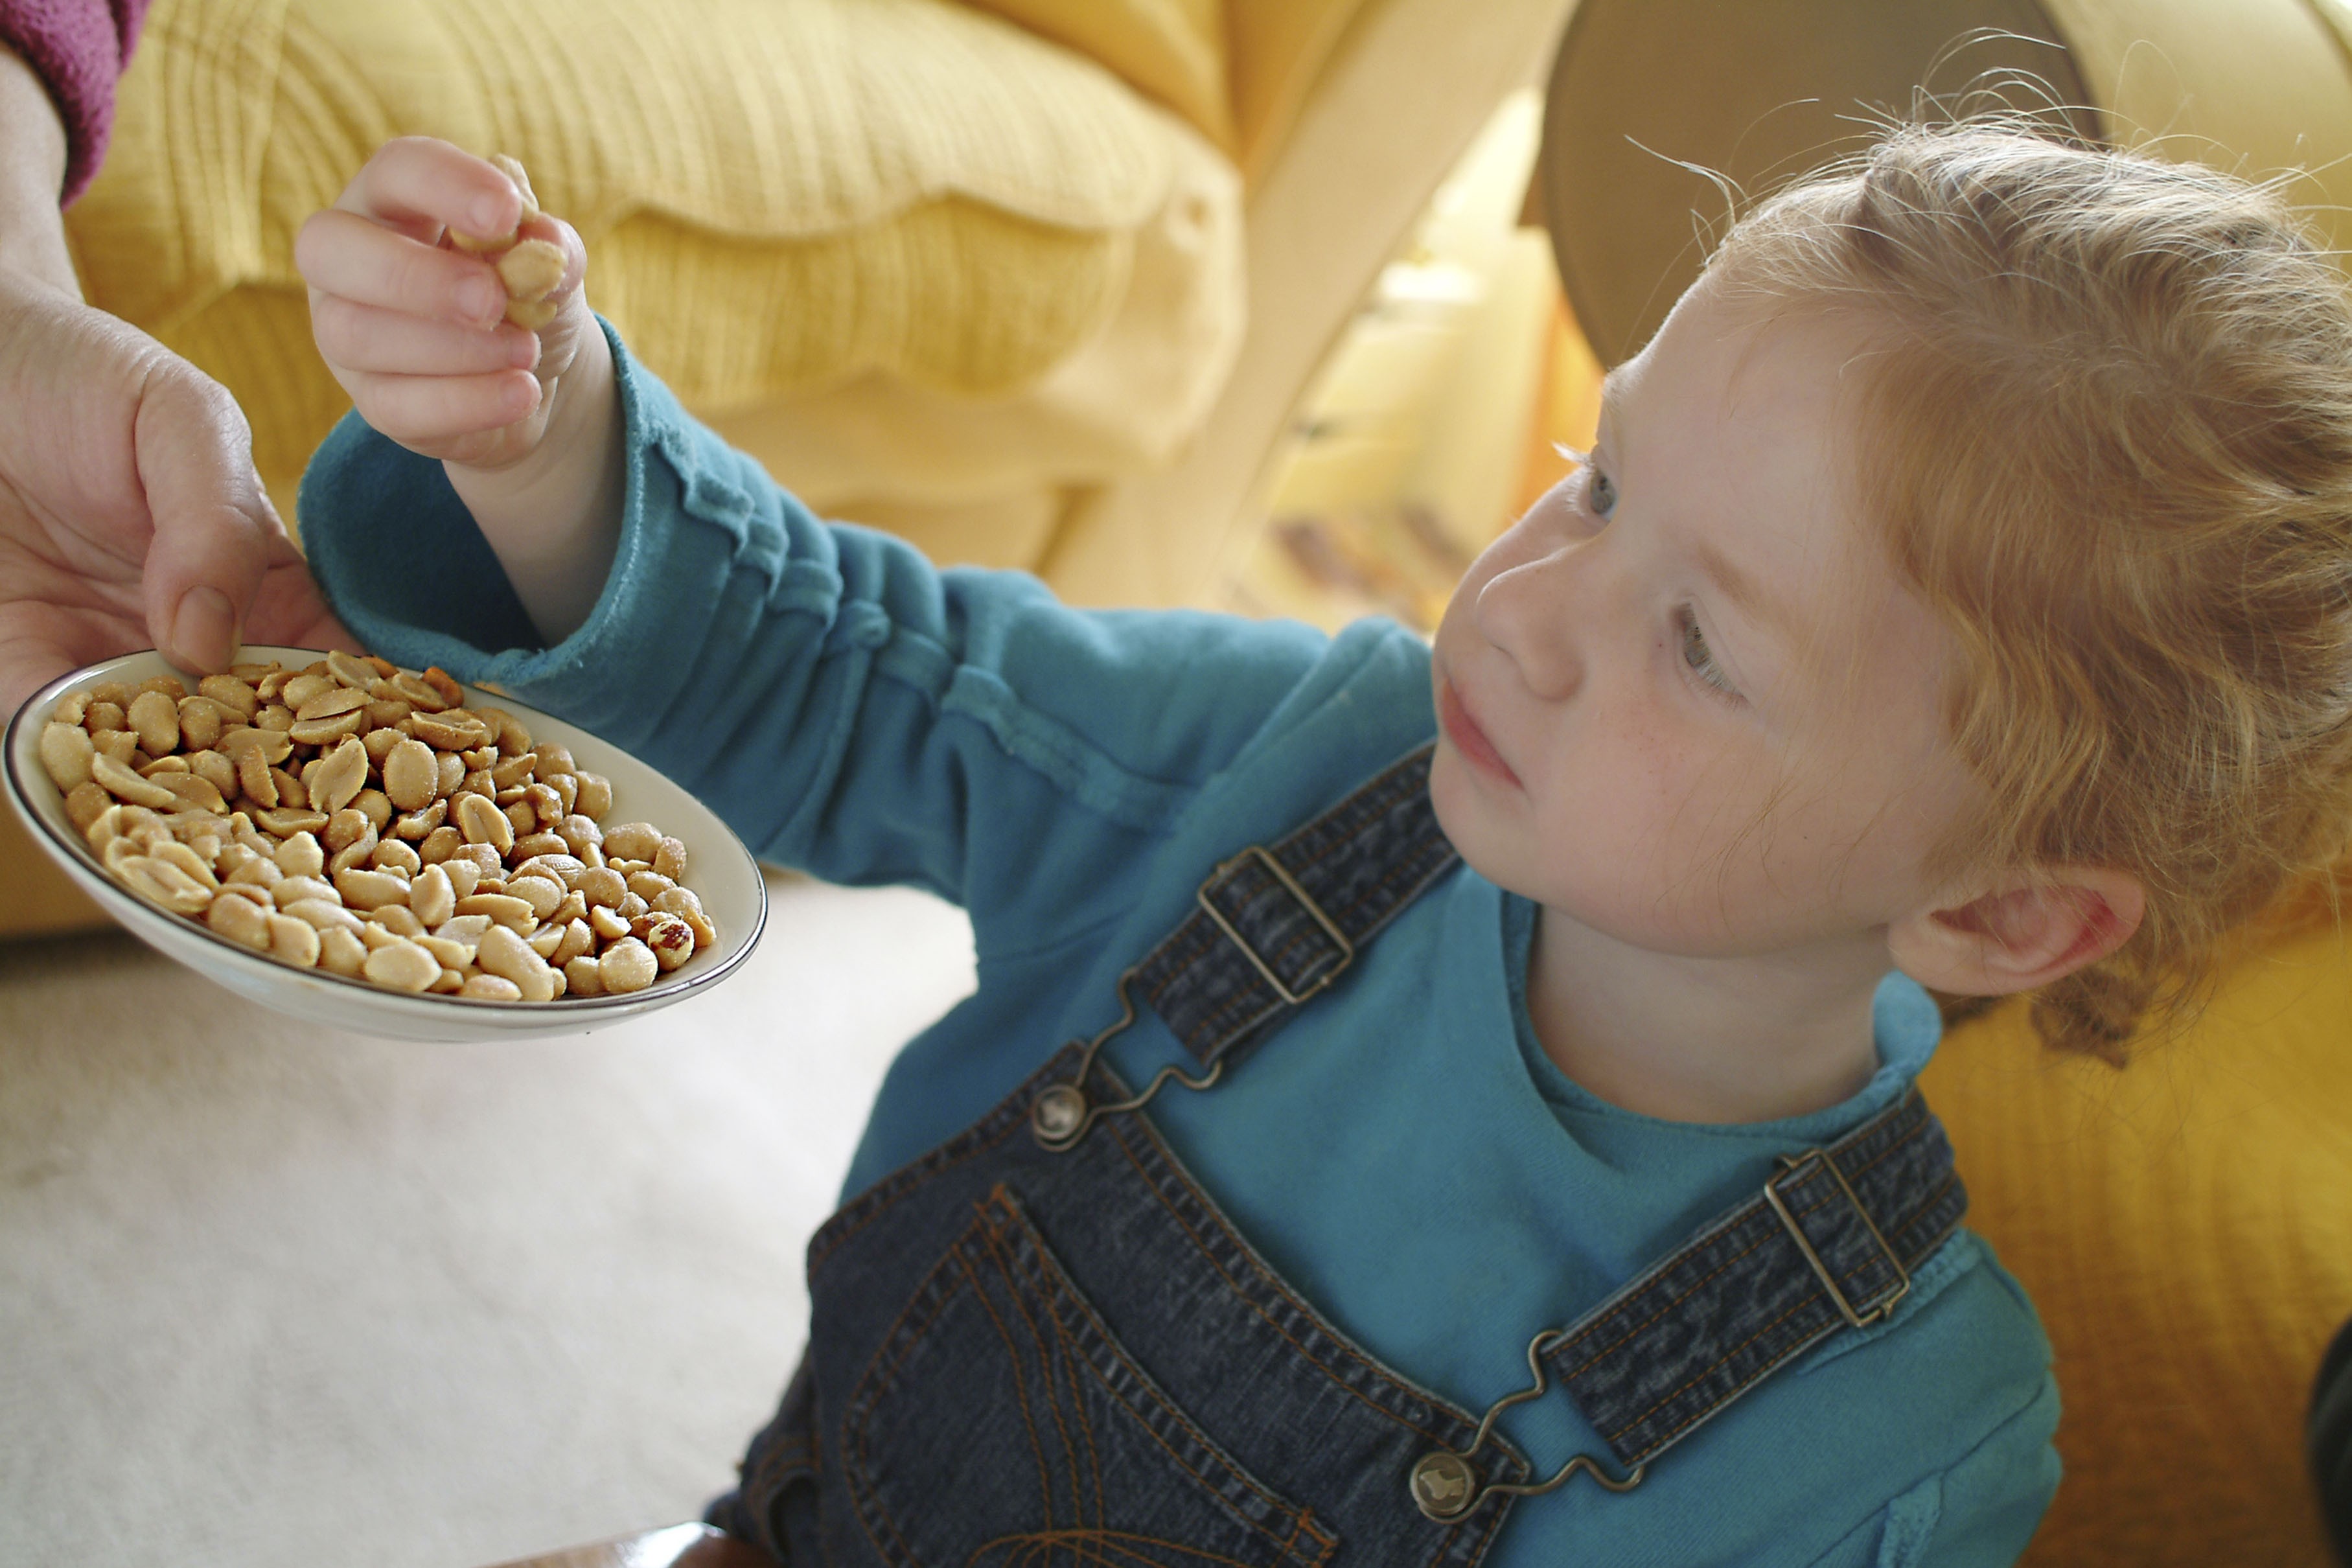 Eviter les allergies en donnant des cacahuètes aux enfants 